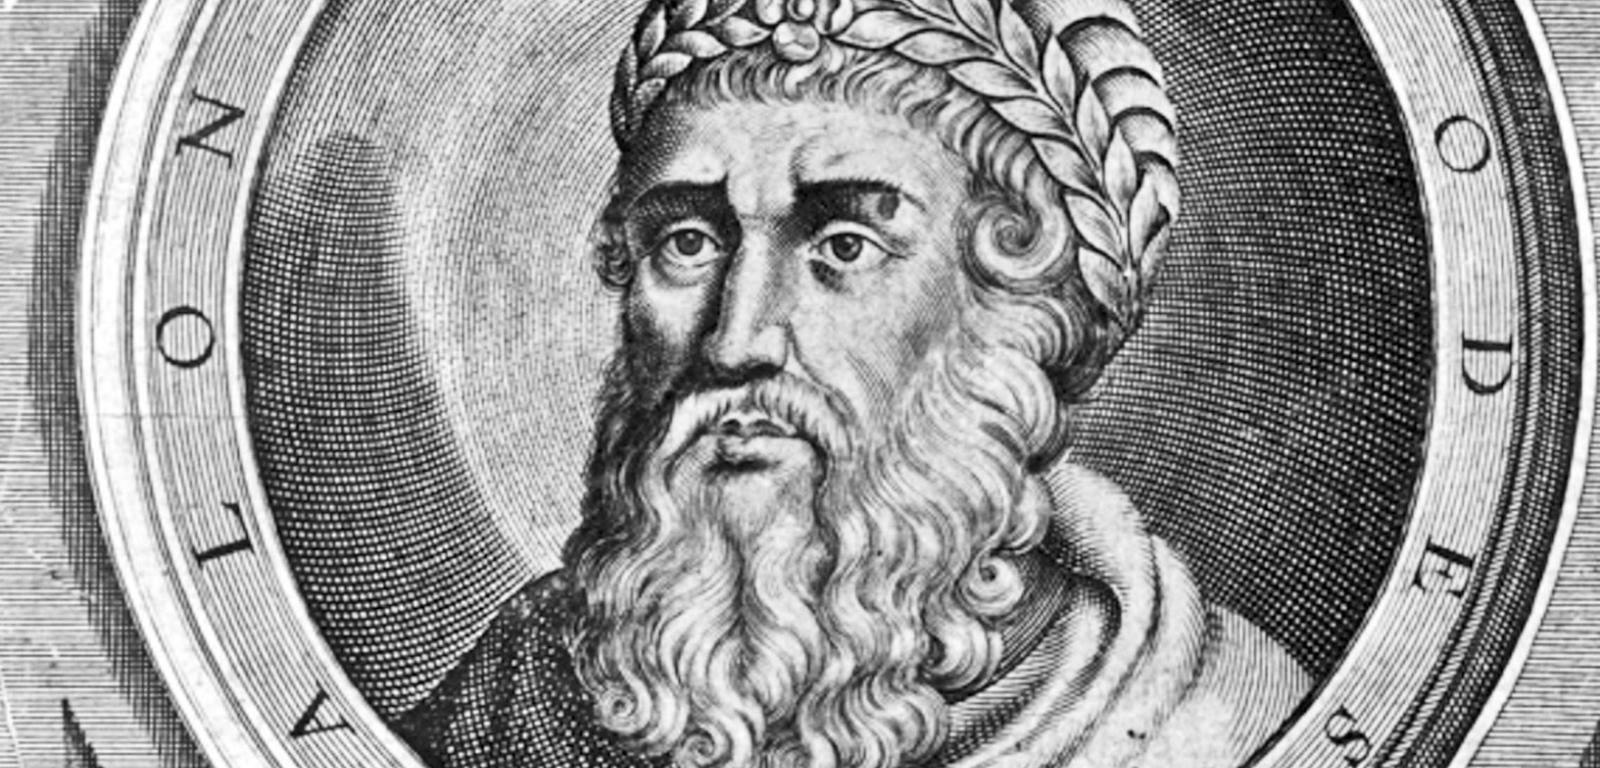 Herod Wielki znany jest bardziej jako niedoszły zabójca Jezusa aniżeli budowniczy ówczesnego państwa żydowskiego.